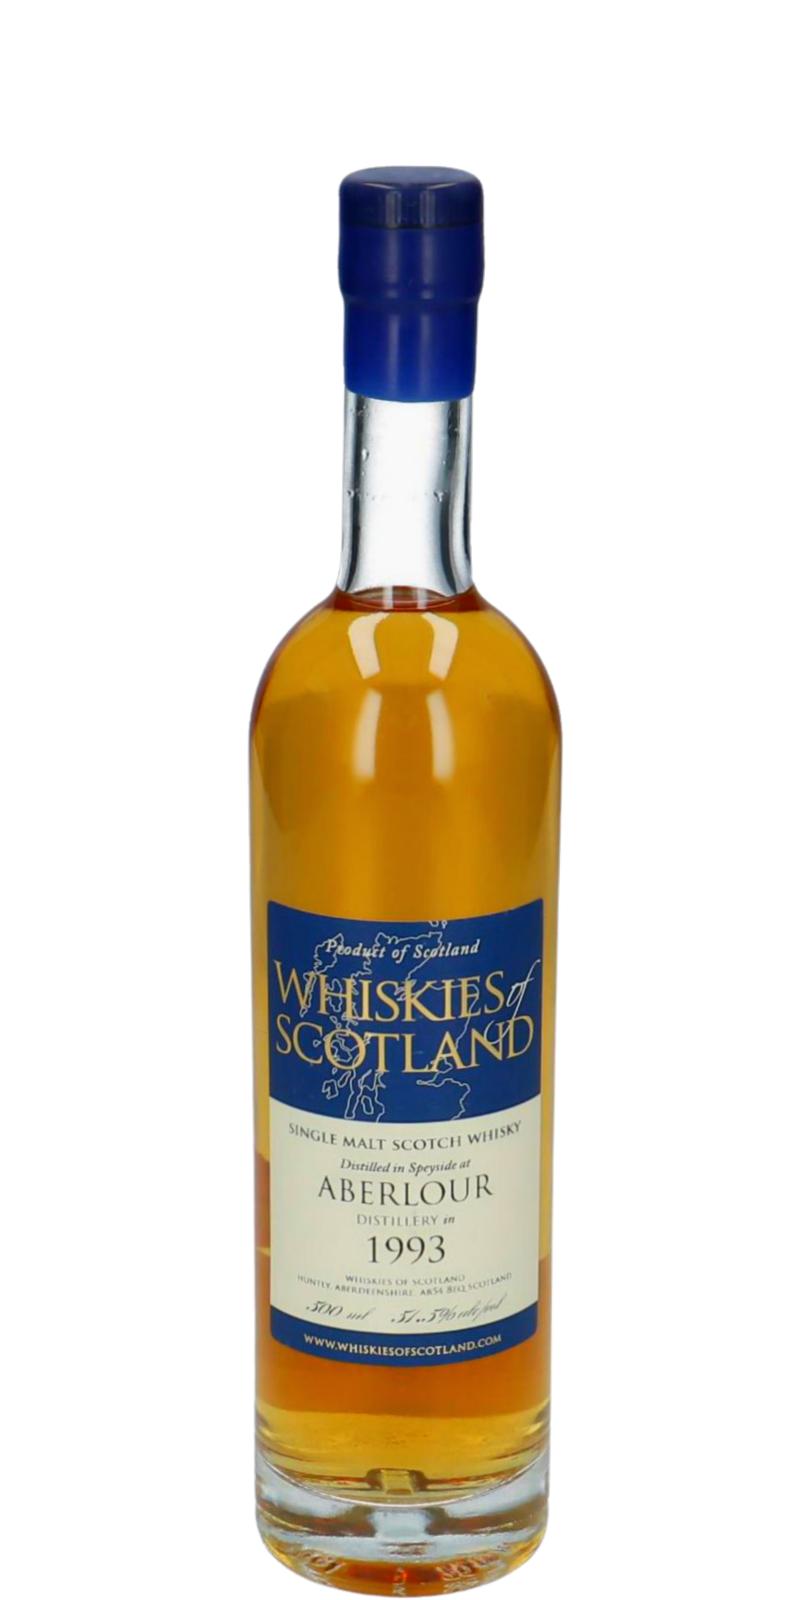 Aberlour 1993 SMD Whiskies of Scotland 51.5% 500ml